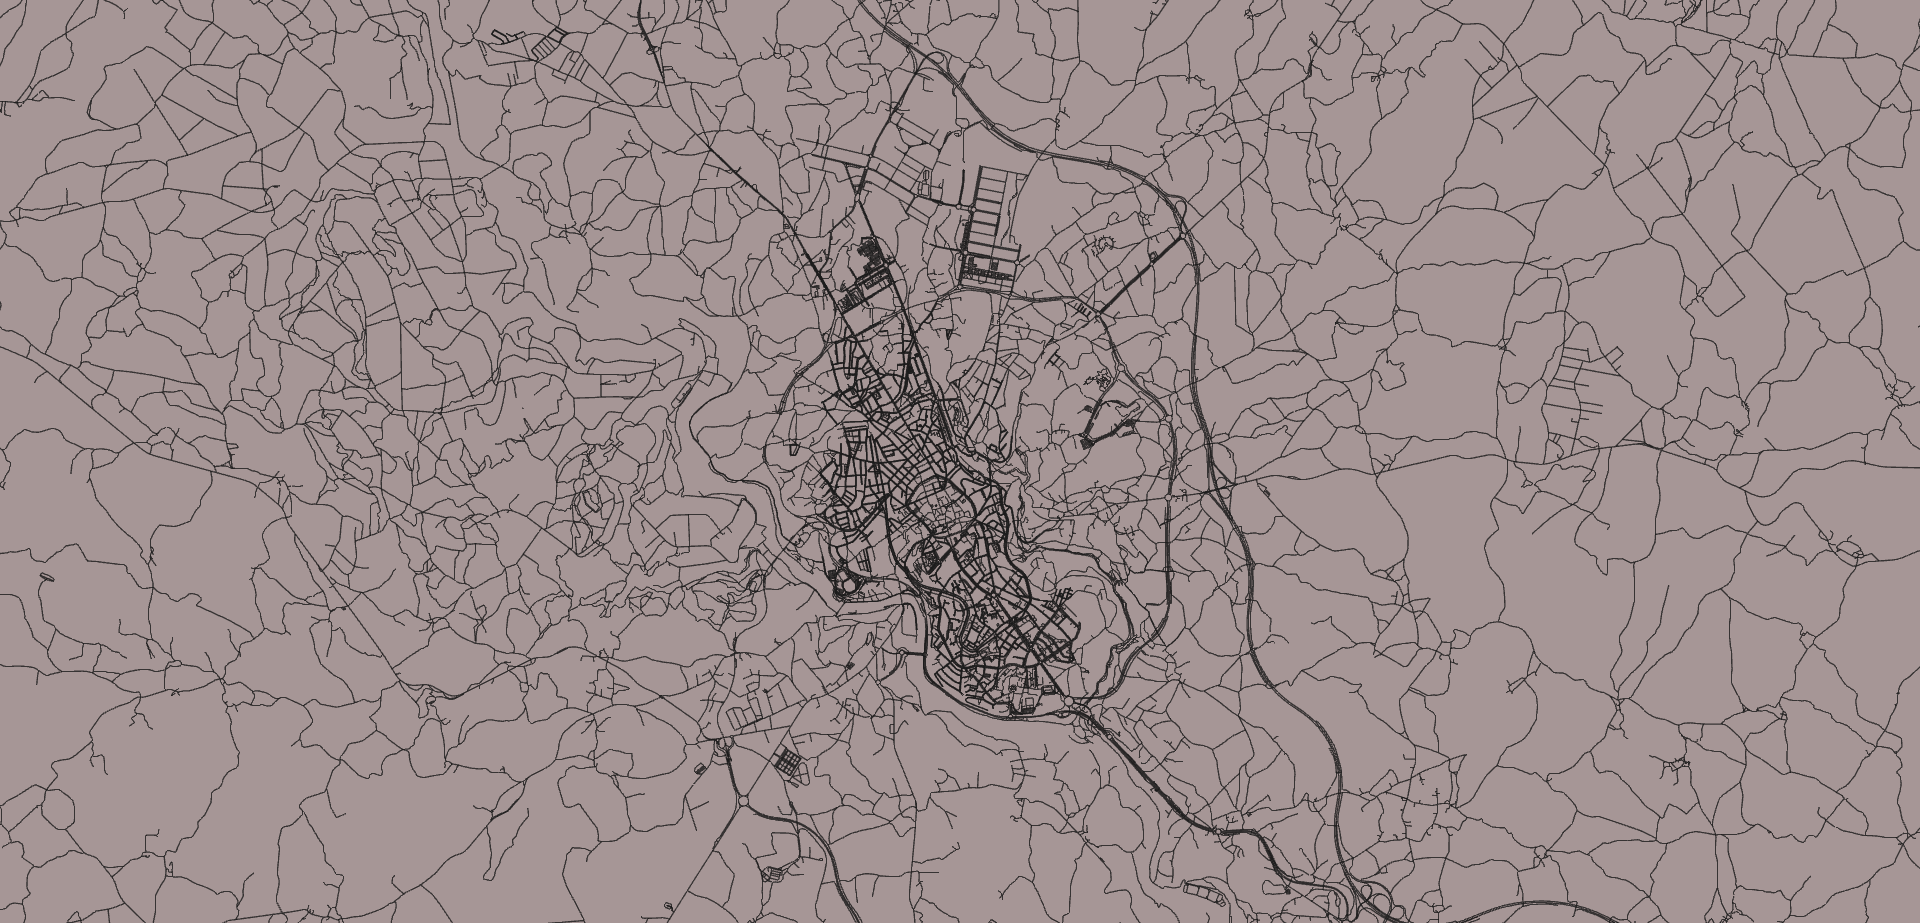 Mapa da cidade de Lugo.